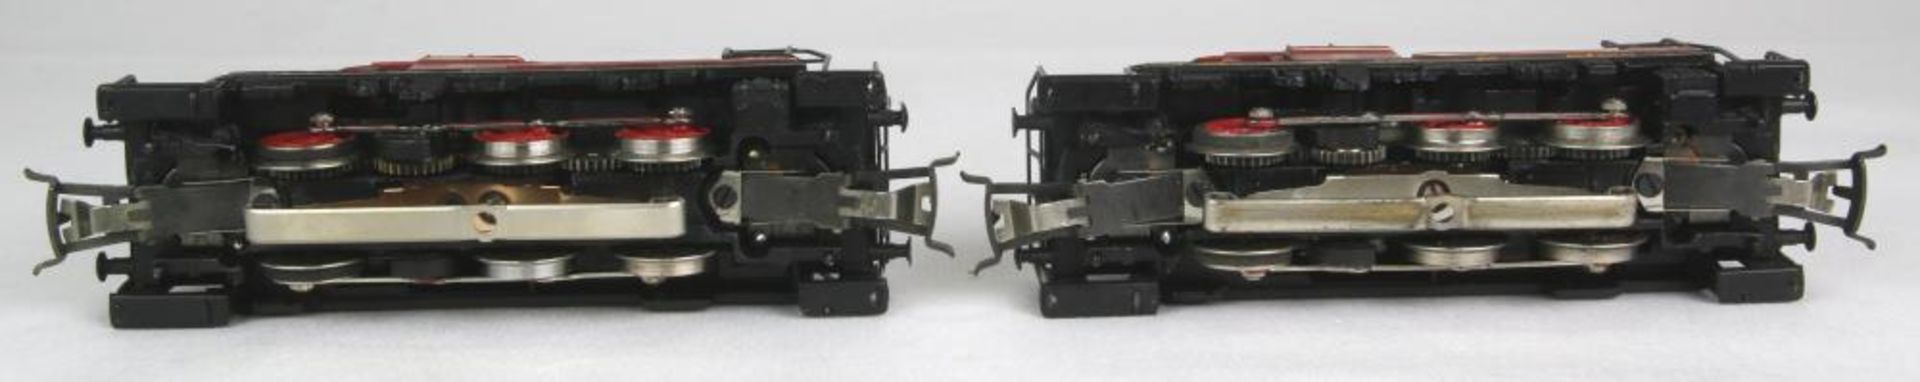 Zwei Diesel-Loks. Märklin H0 3064 (V60 1009) der DB, 3065 (V60 1009) der DB, beide in OVP. - Bild 4 aus 4